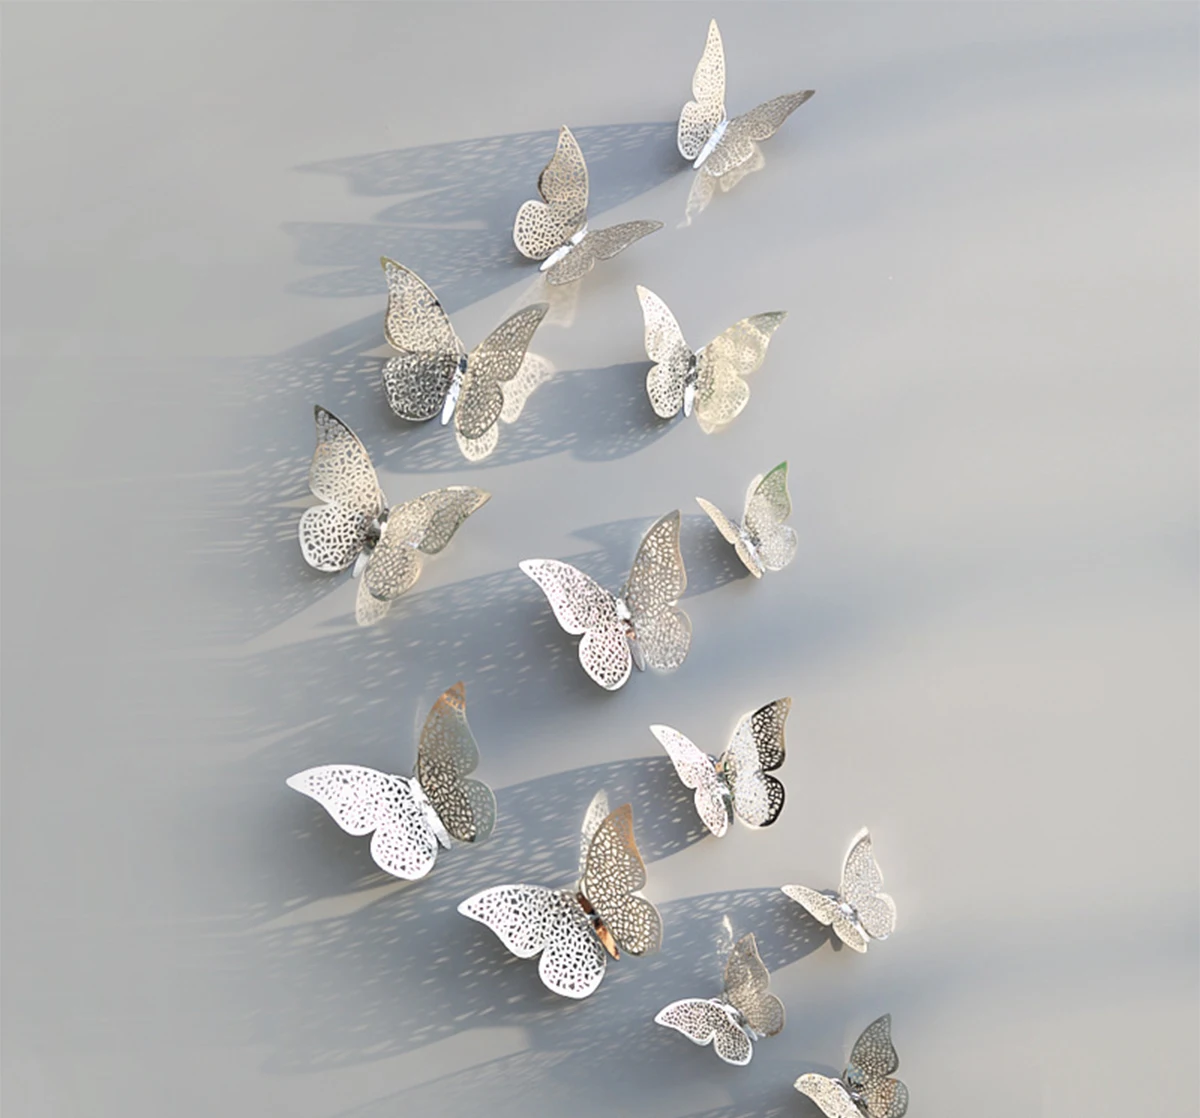 12 шт./компл. 3D настенные стикеры бабочки полые Бумага; 3 размера; Цвет серебристый, золотой для наклейки на холодильник домашний вечерние свадебный Декор